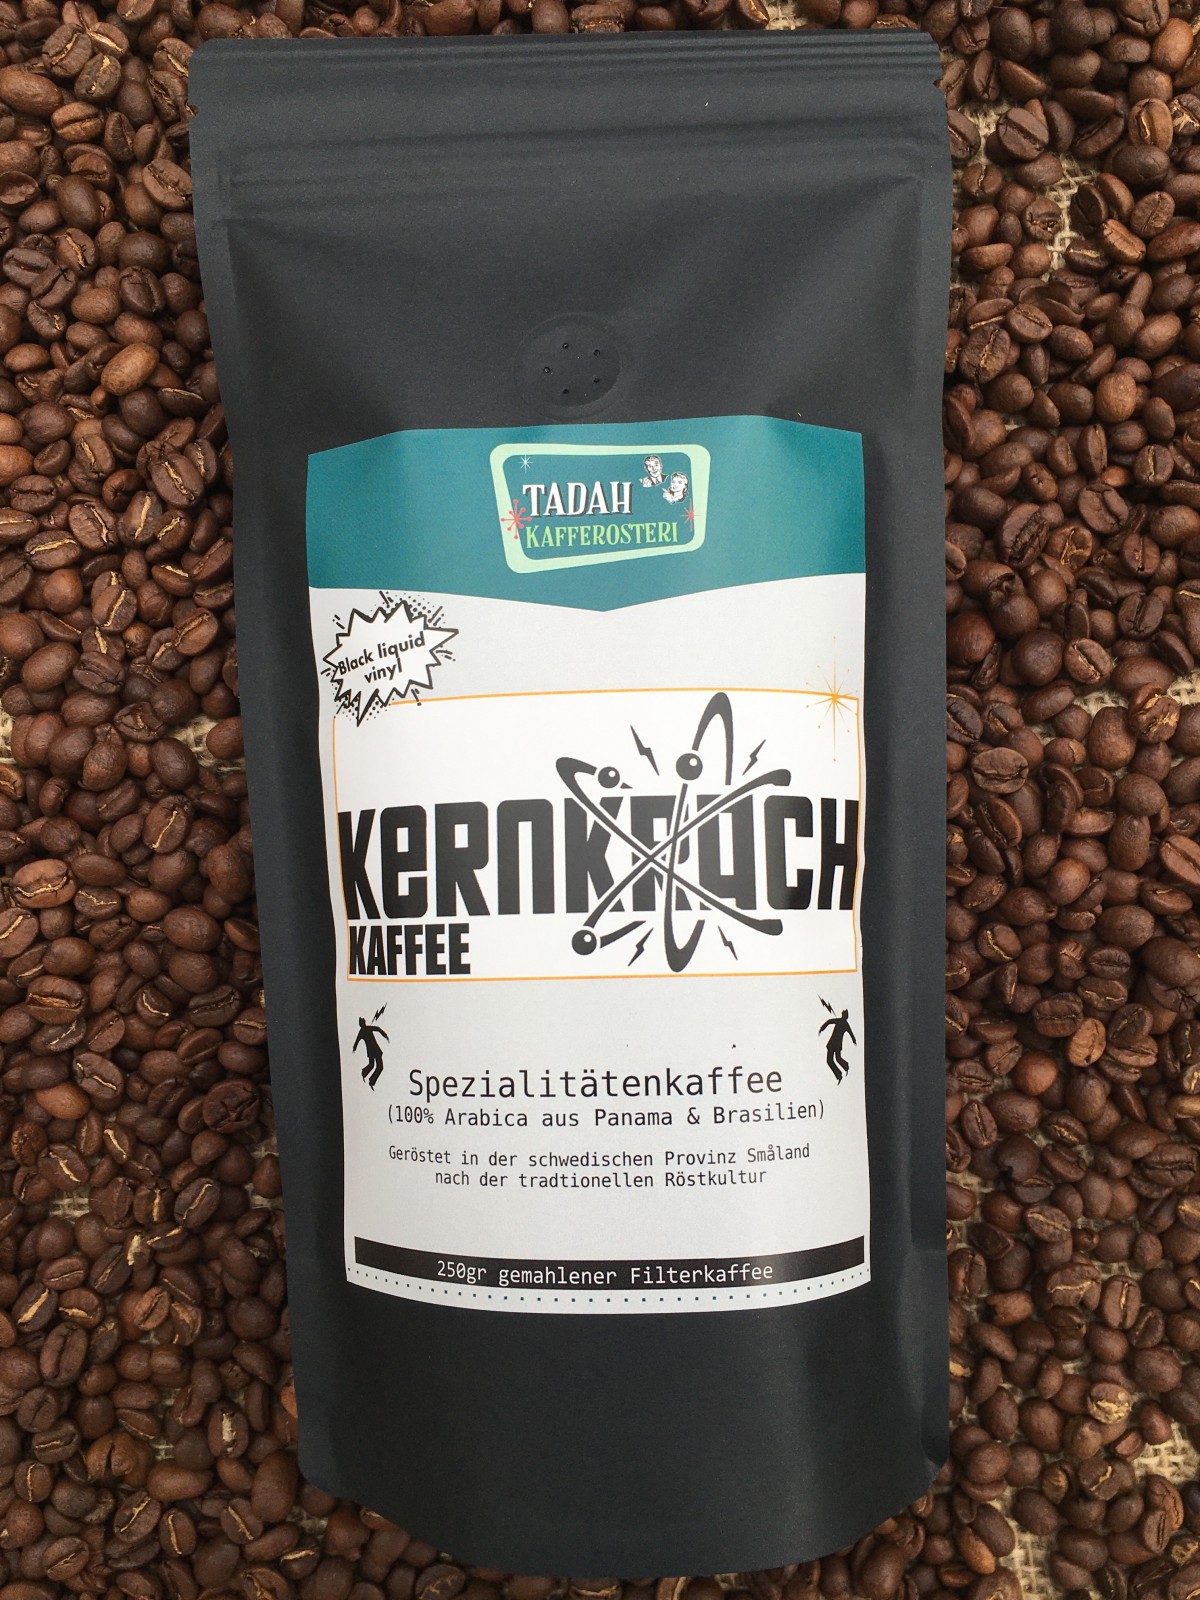 "KERNKRACH" | Kaffeemischung